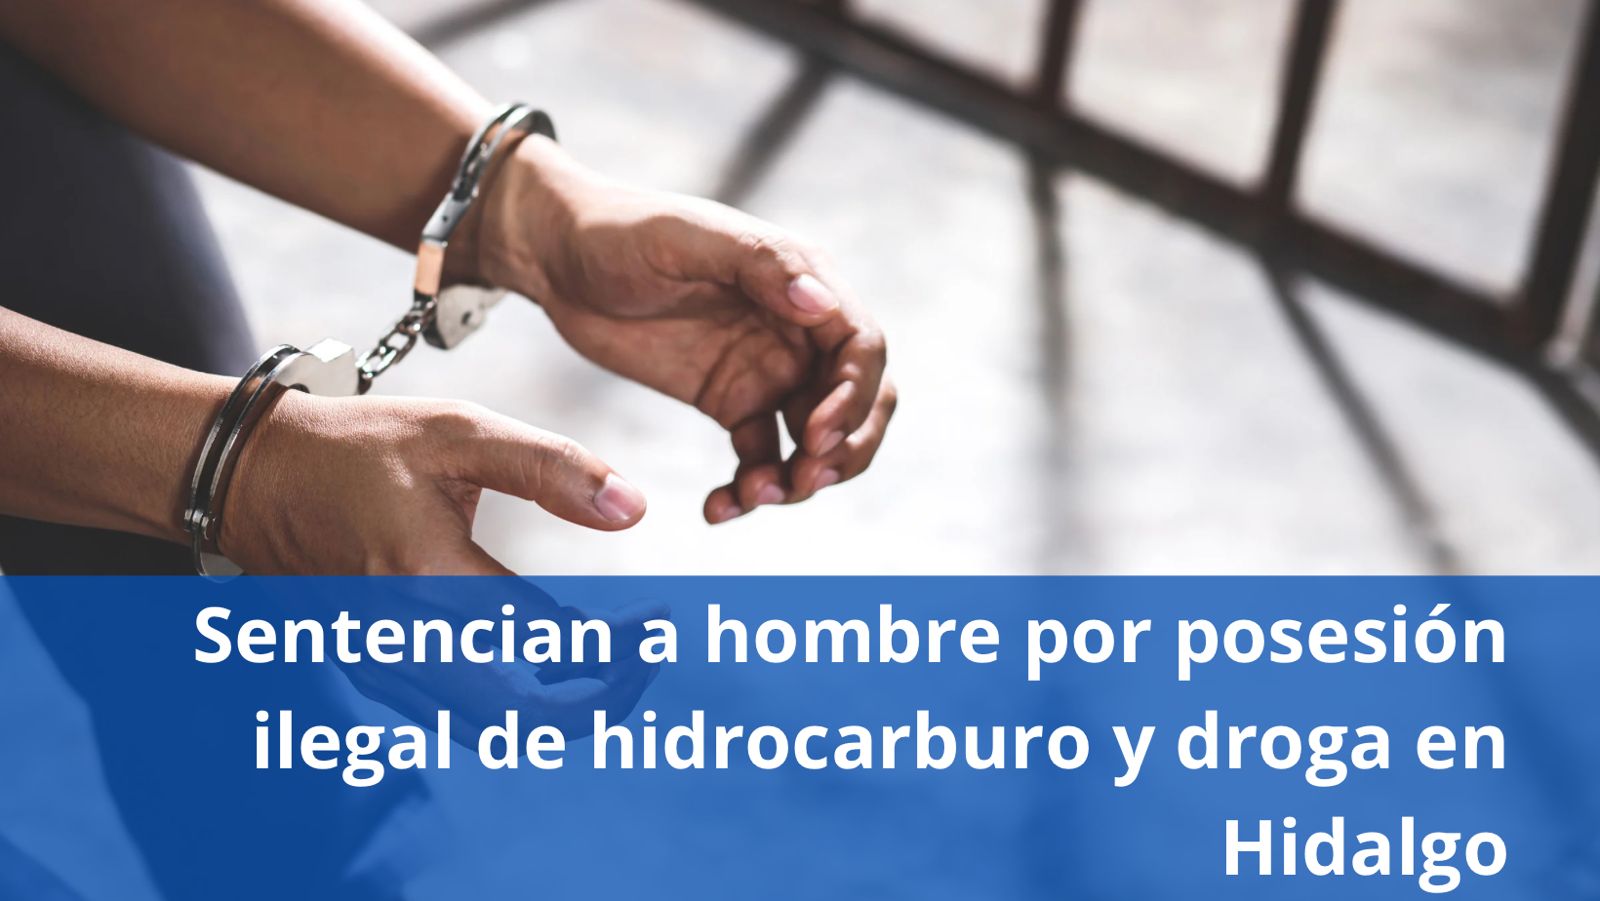 Sentencian a hombre por posesión ilegal de hidrocarburo y droga en Hidalgo